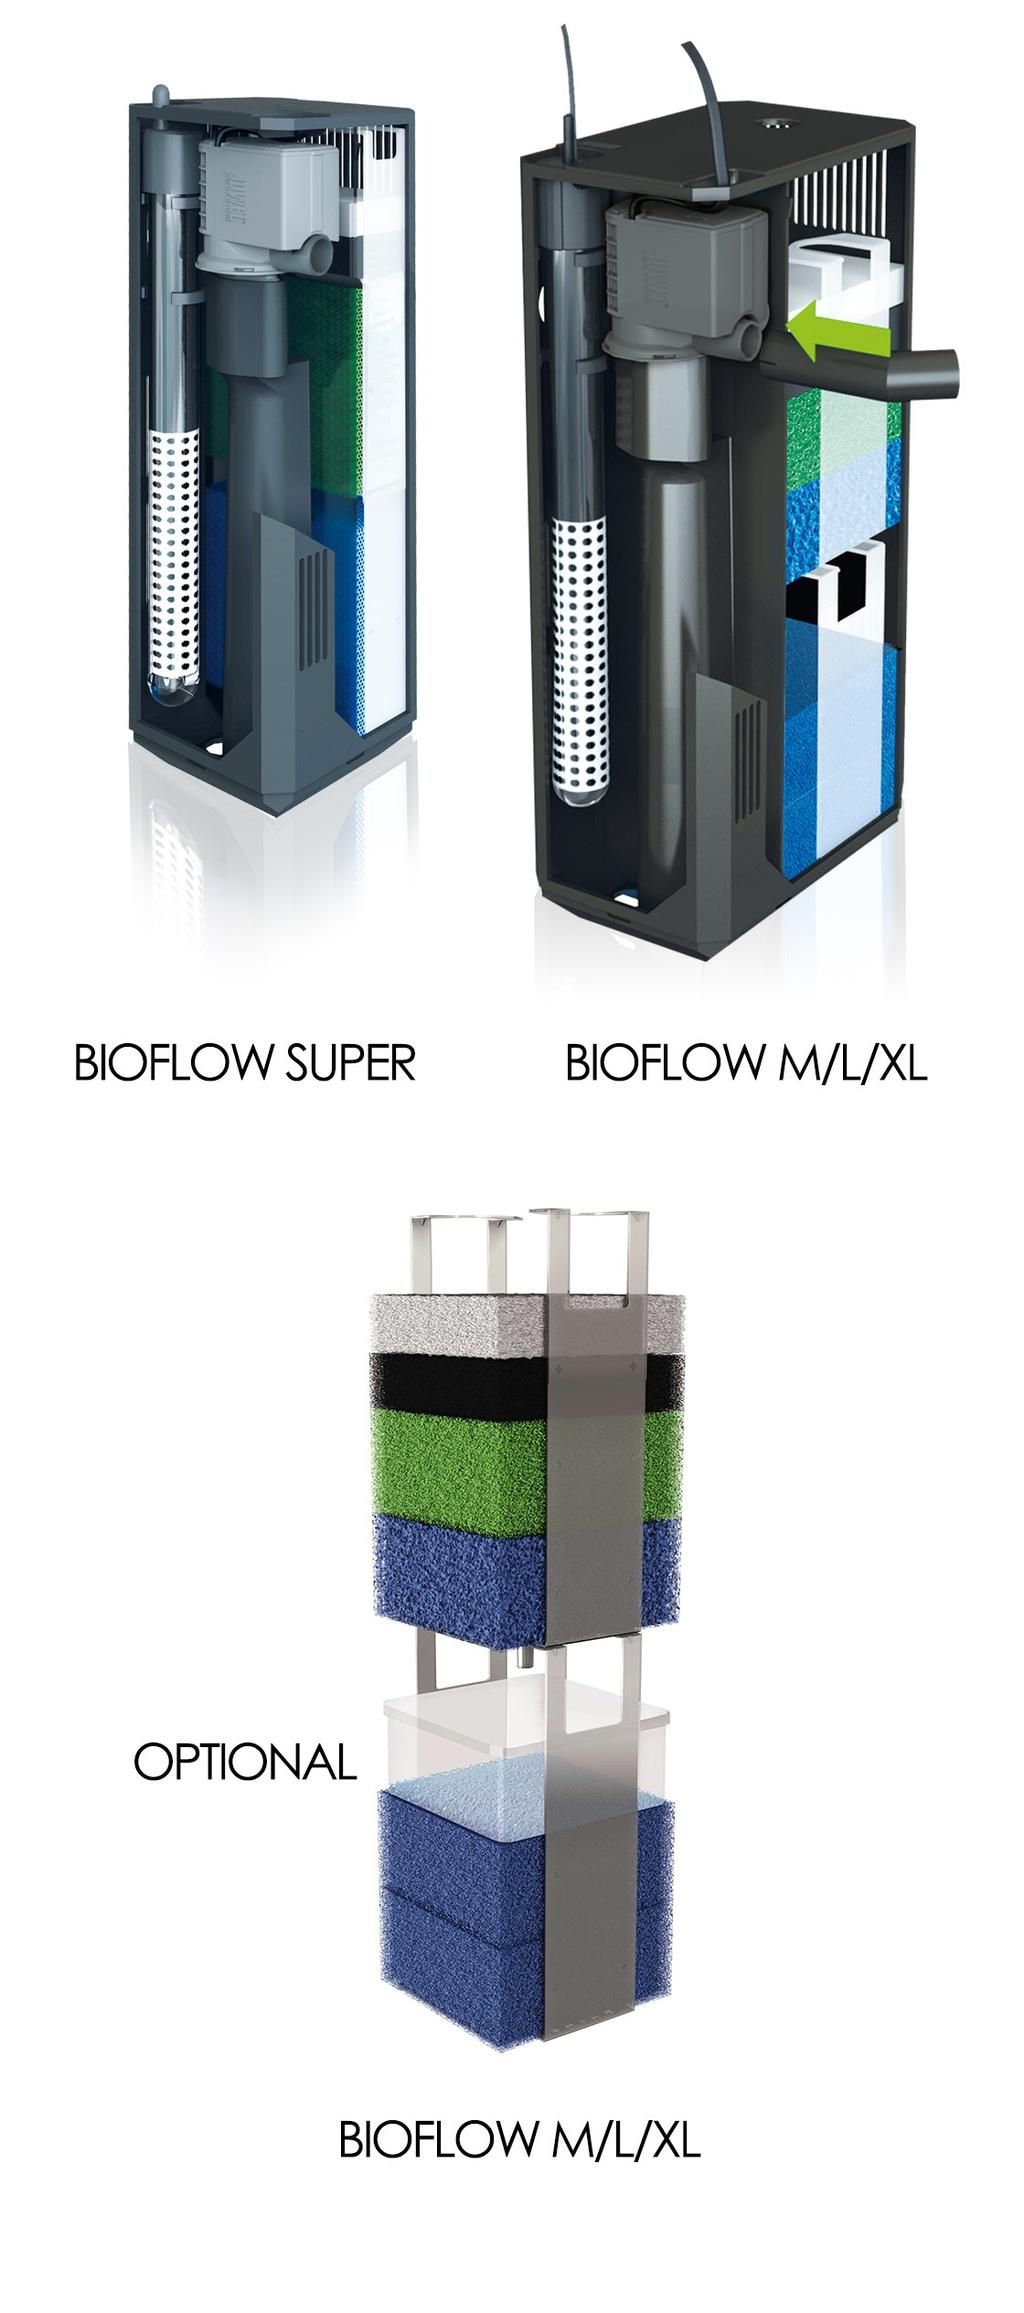 JUWEL System filtracyjny Bioflow System ﬁltracyjny Bioﬂow marki JUWEL jest wysoko skutecznym, 2-fazowym, biologicznym systemem ﬁltracyjnym, którego komponenty zostały doskonale do siebie dobrane.